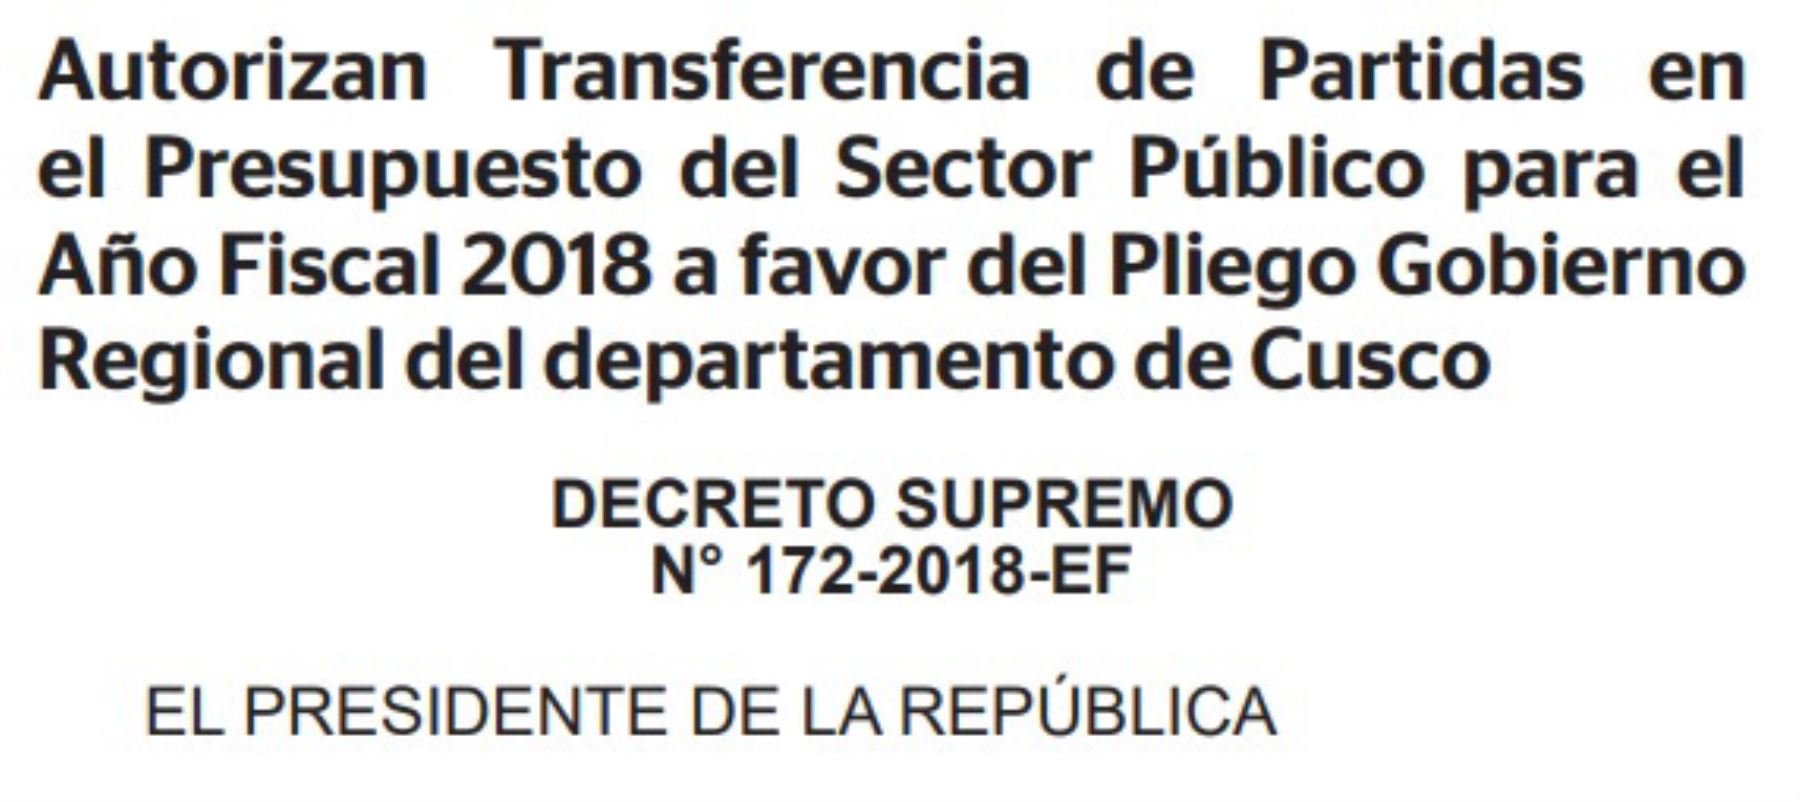 El Ejecutivo, a través del Ministerio de Economía y Finanzas, autorizó una transferencia de 2 millones 28,757 soles al gobierno regional de Cusco para el financiamiento de la operación y mantenimiento del centro de salud Túpac Amaru.